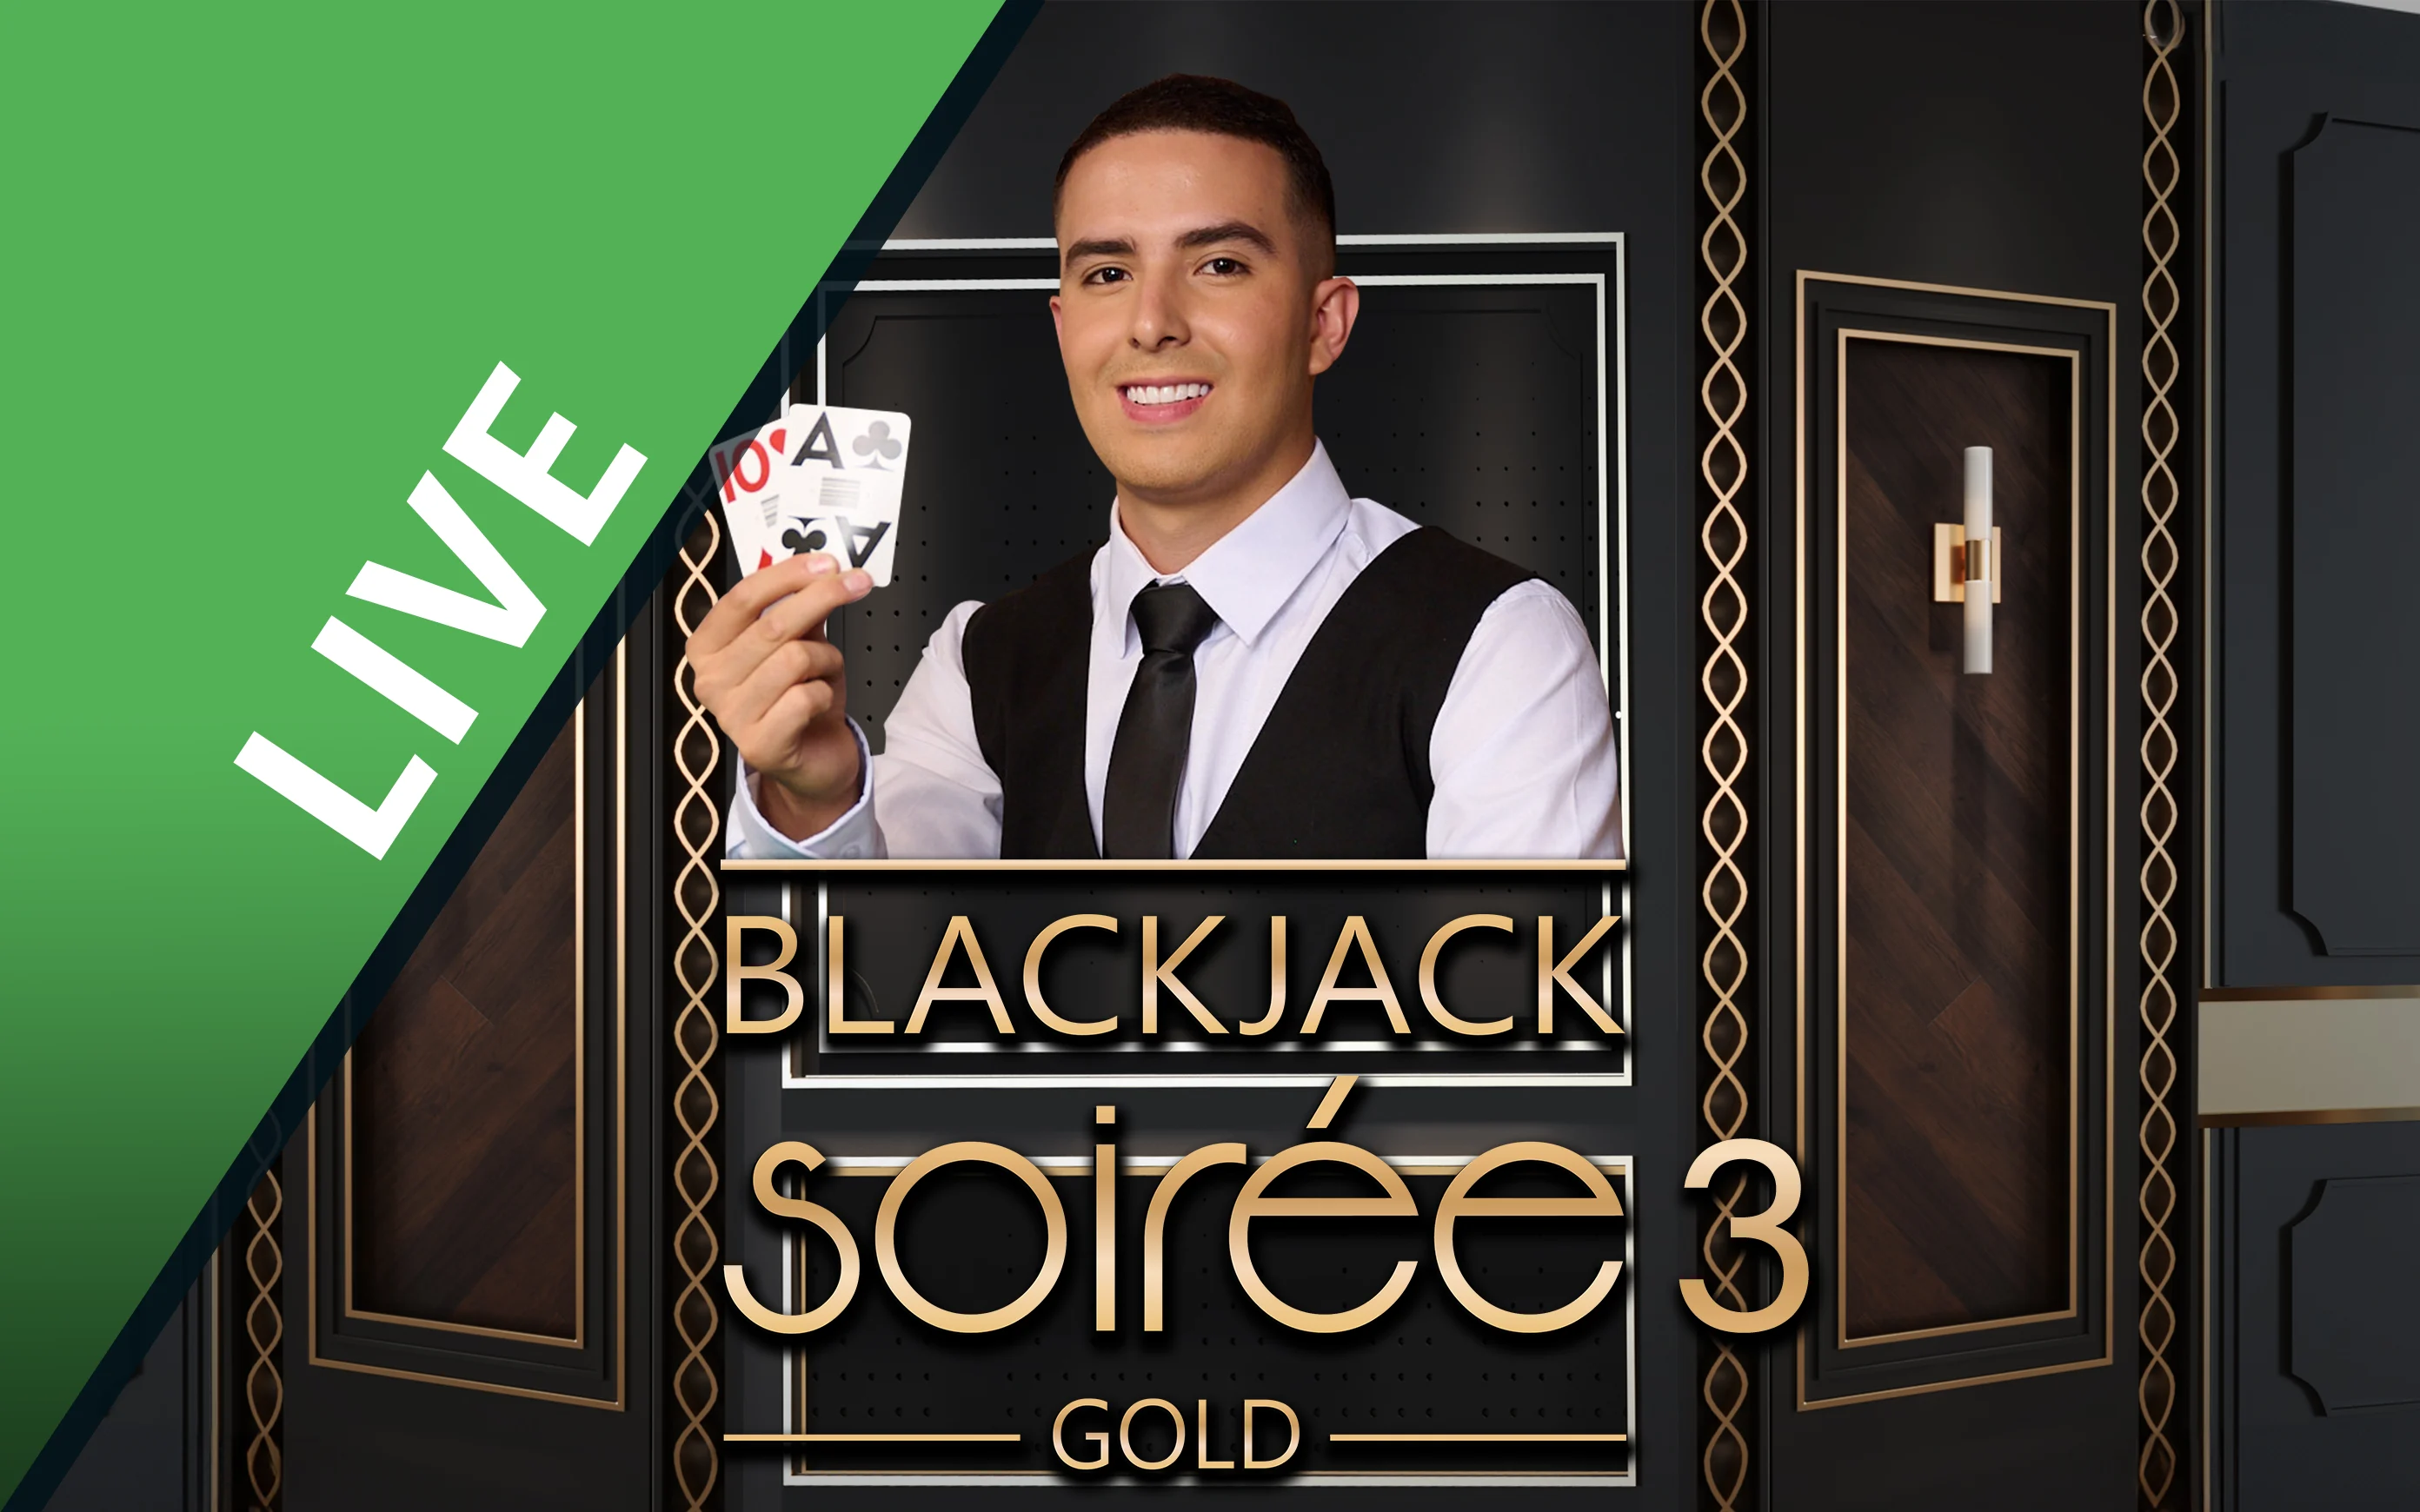 Luaj Blackjack Soirée Gold 3 në kazino Starcasino.be në internet